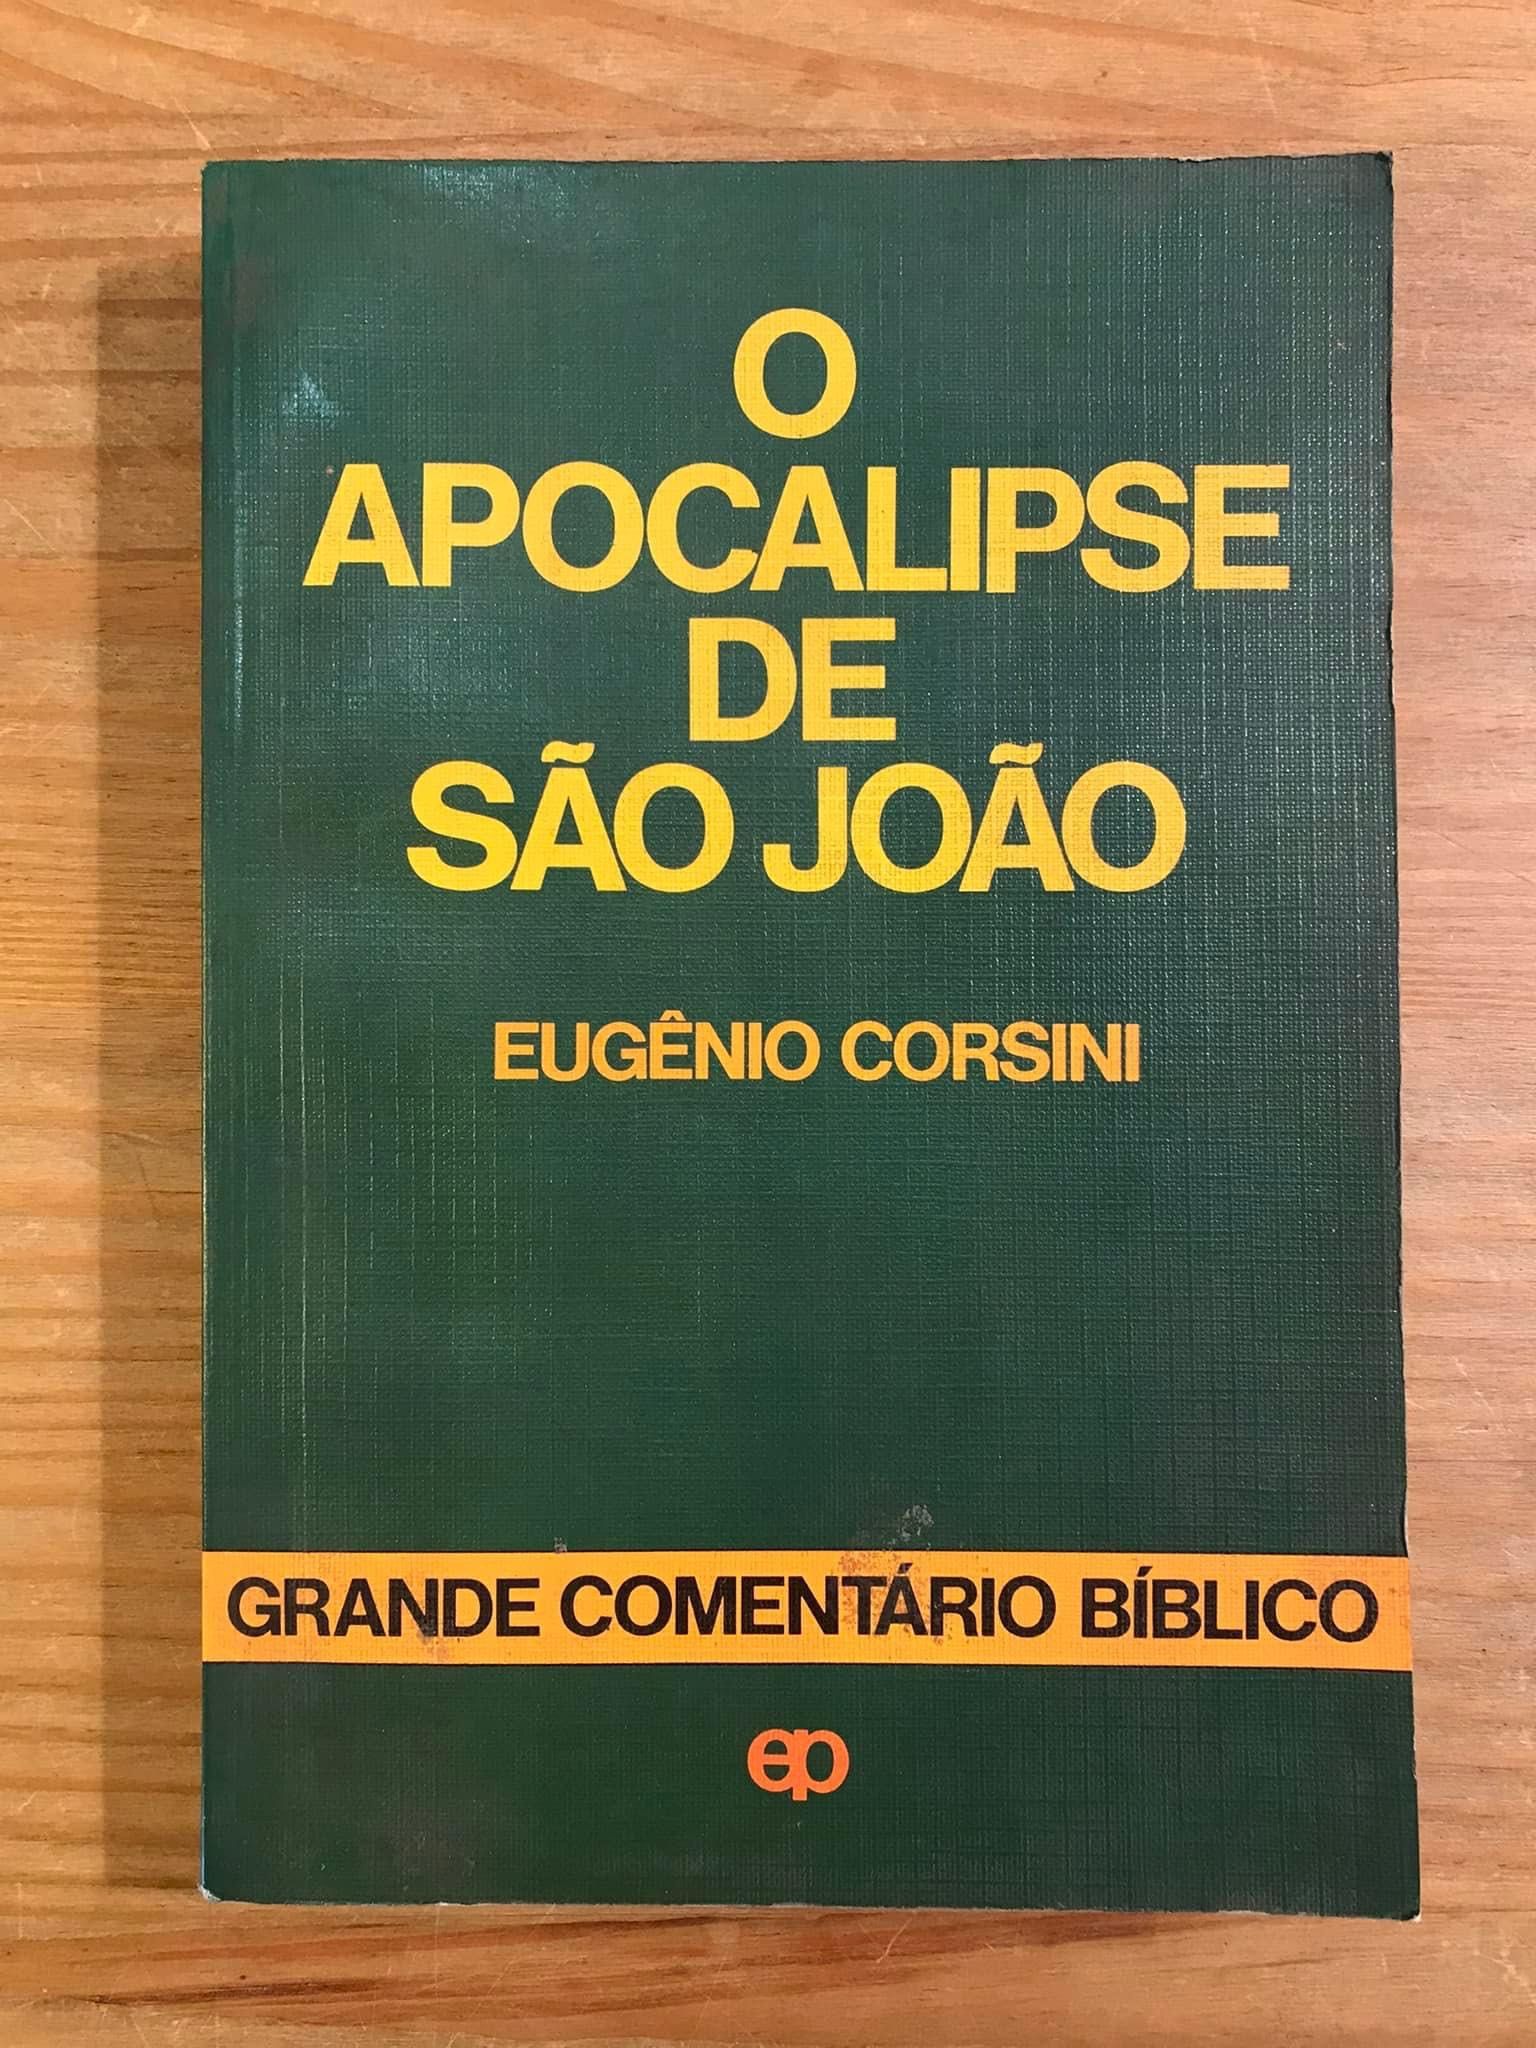 O Apocalipse de São João - Eugénio Corsini (portes grátis)